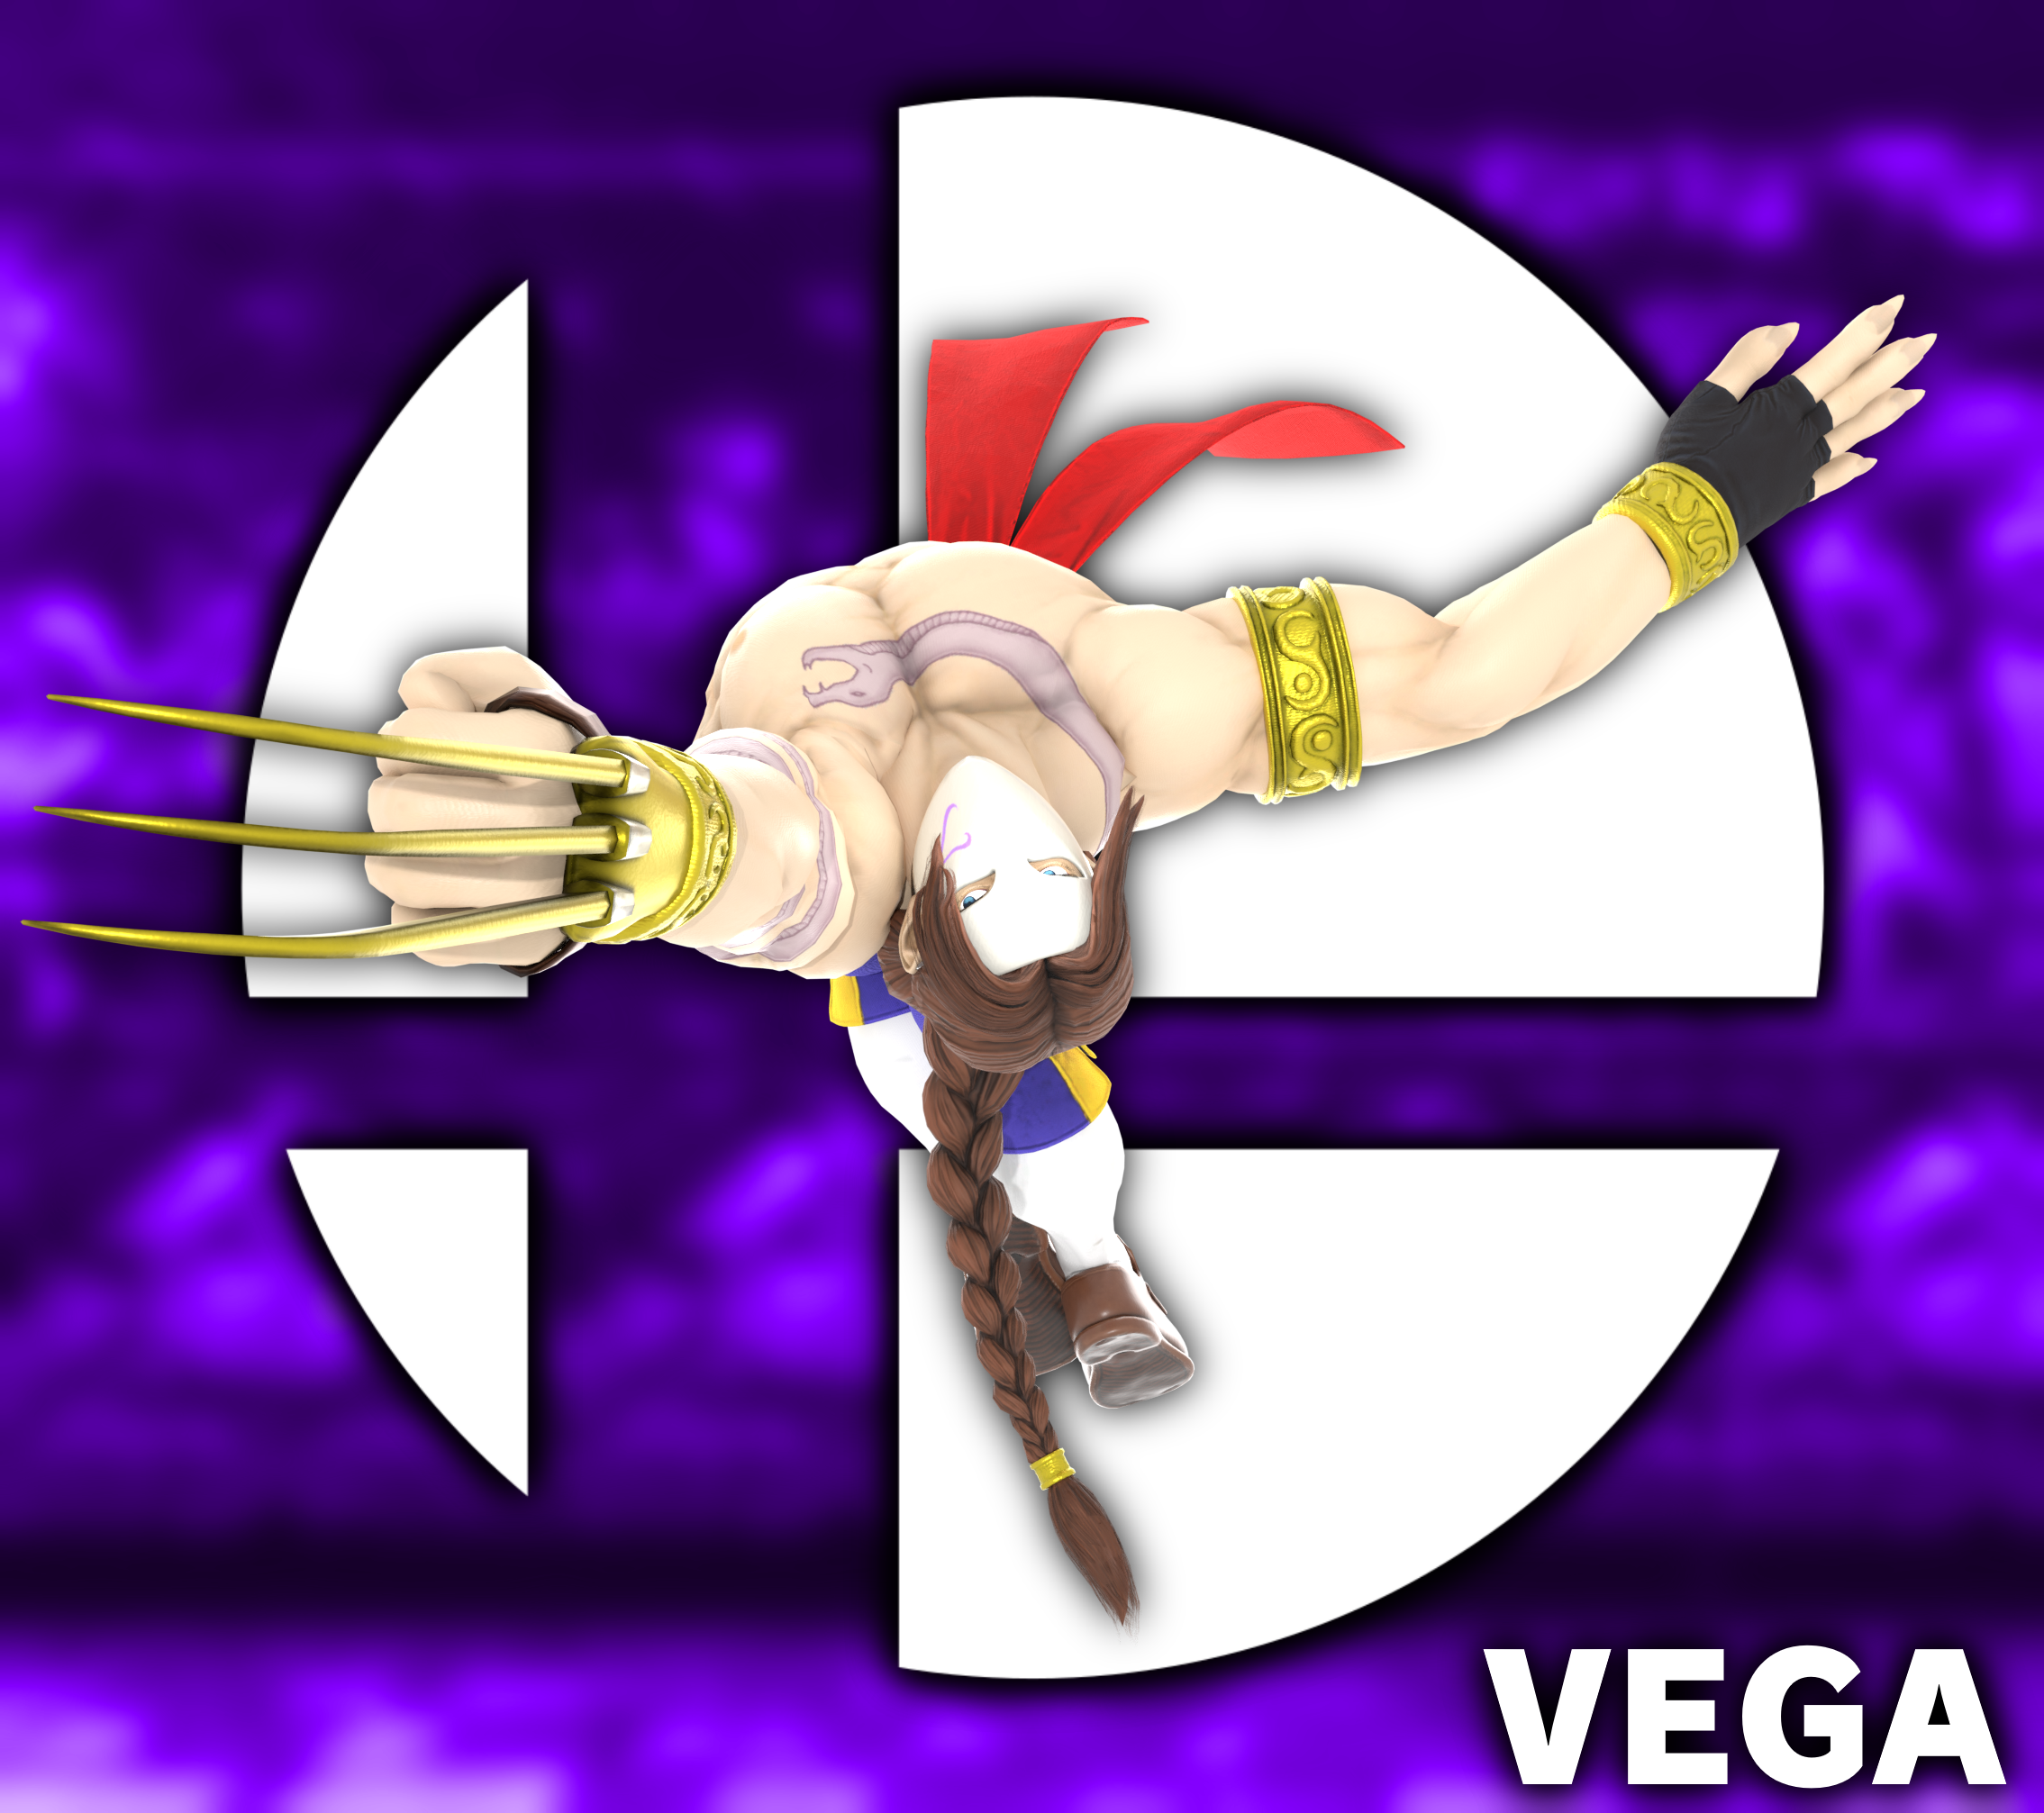 Vega Street Fighter 2V #4 by OfficialVegaSF on DeviantArt